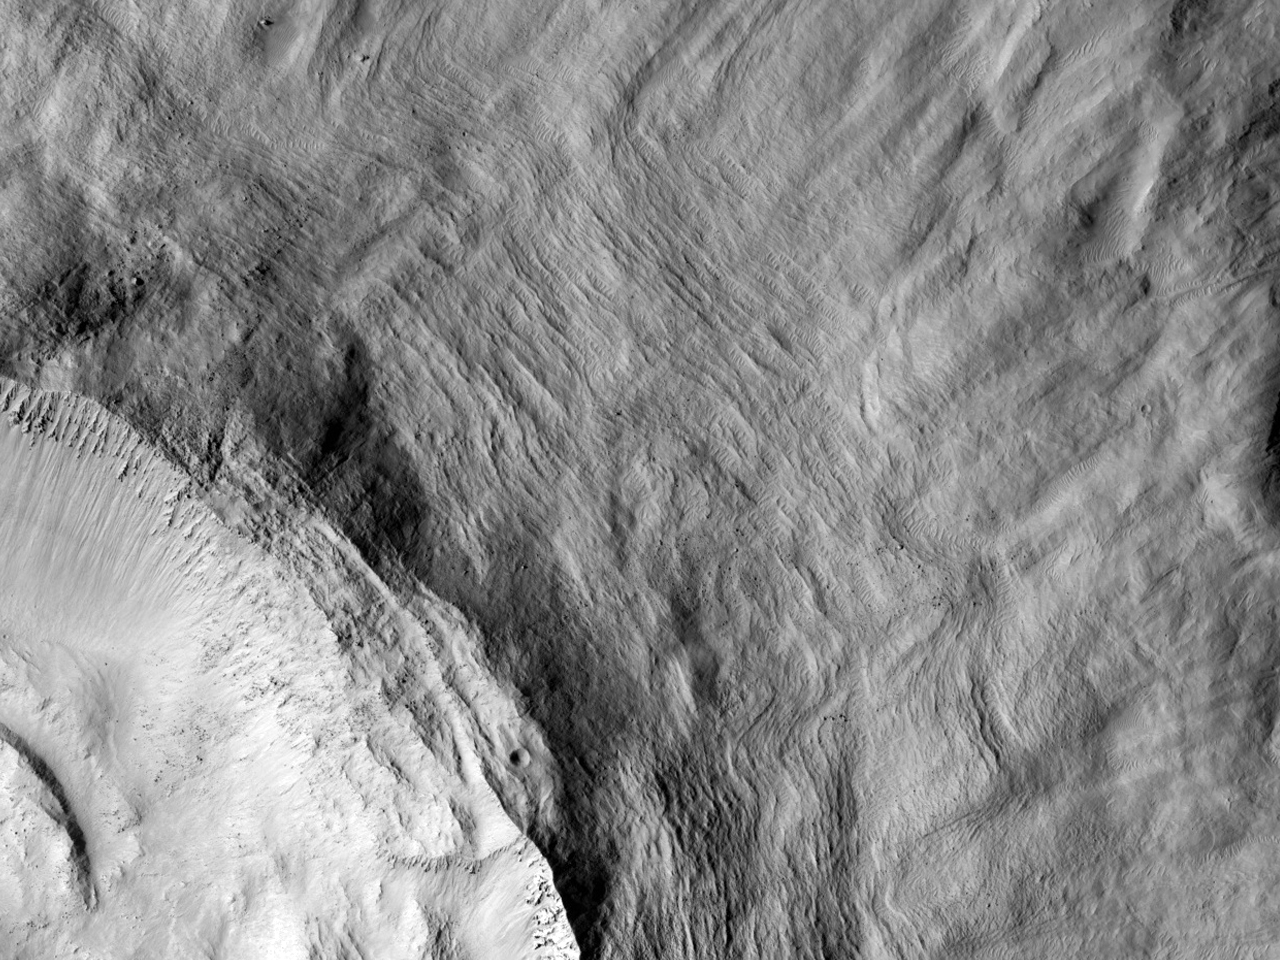 Cavit principale del cratere a raggi di Gratteri